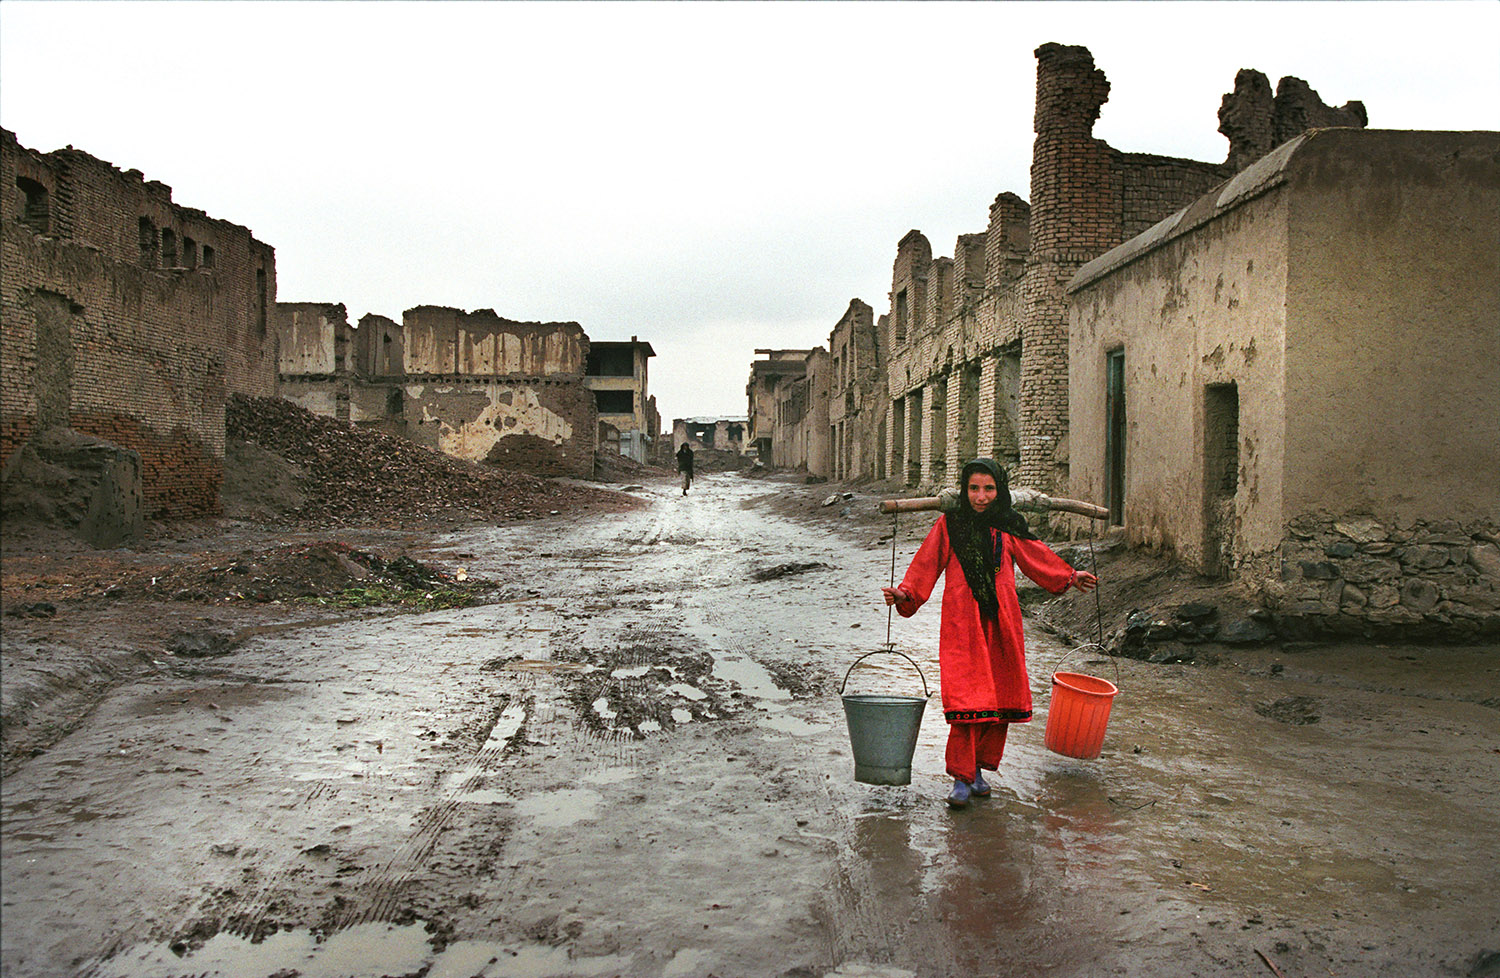 Dans une rue de Kaboul, le sol est boueux et les maisons sont détruites, probablement par les Talibans. Une femme afghane porte des seaux d'eau sur ses épaules.